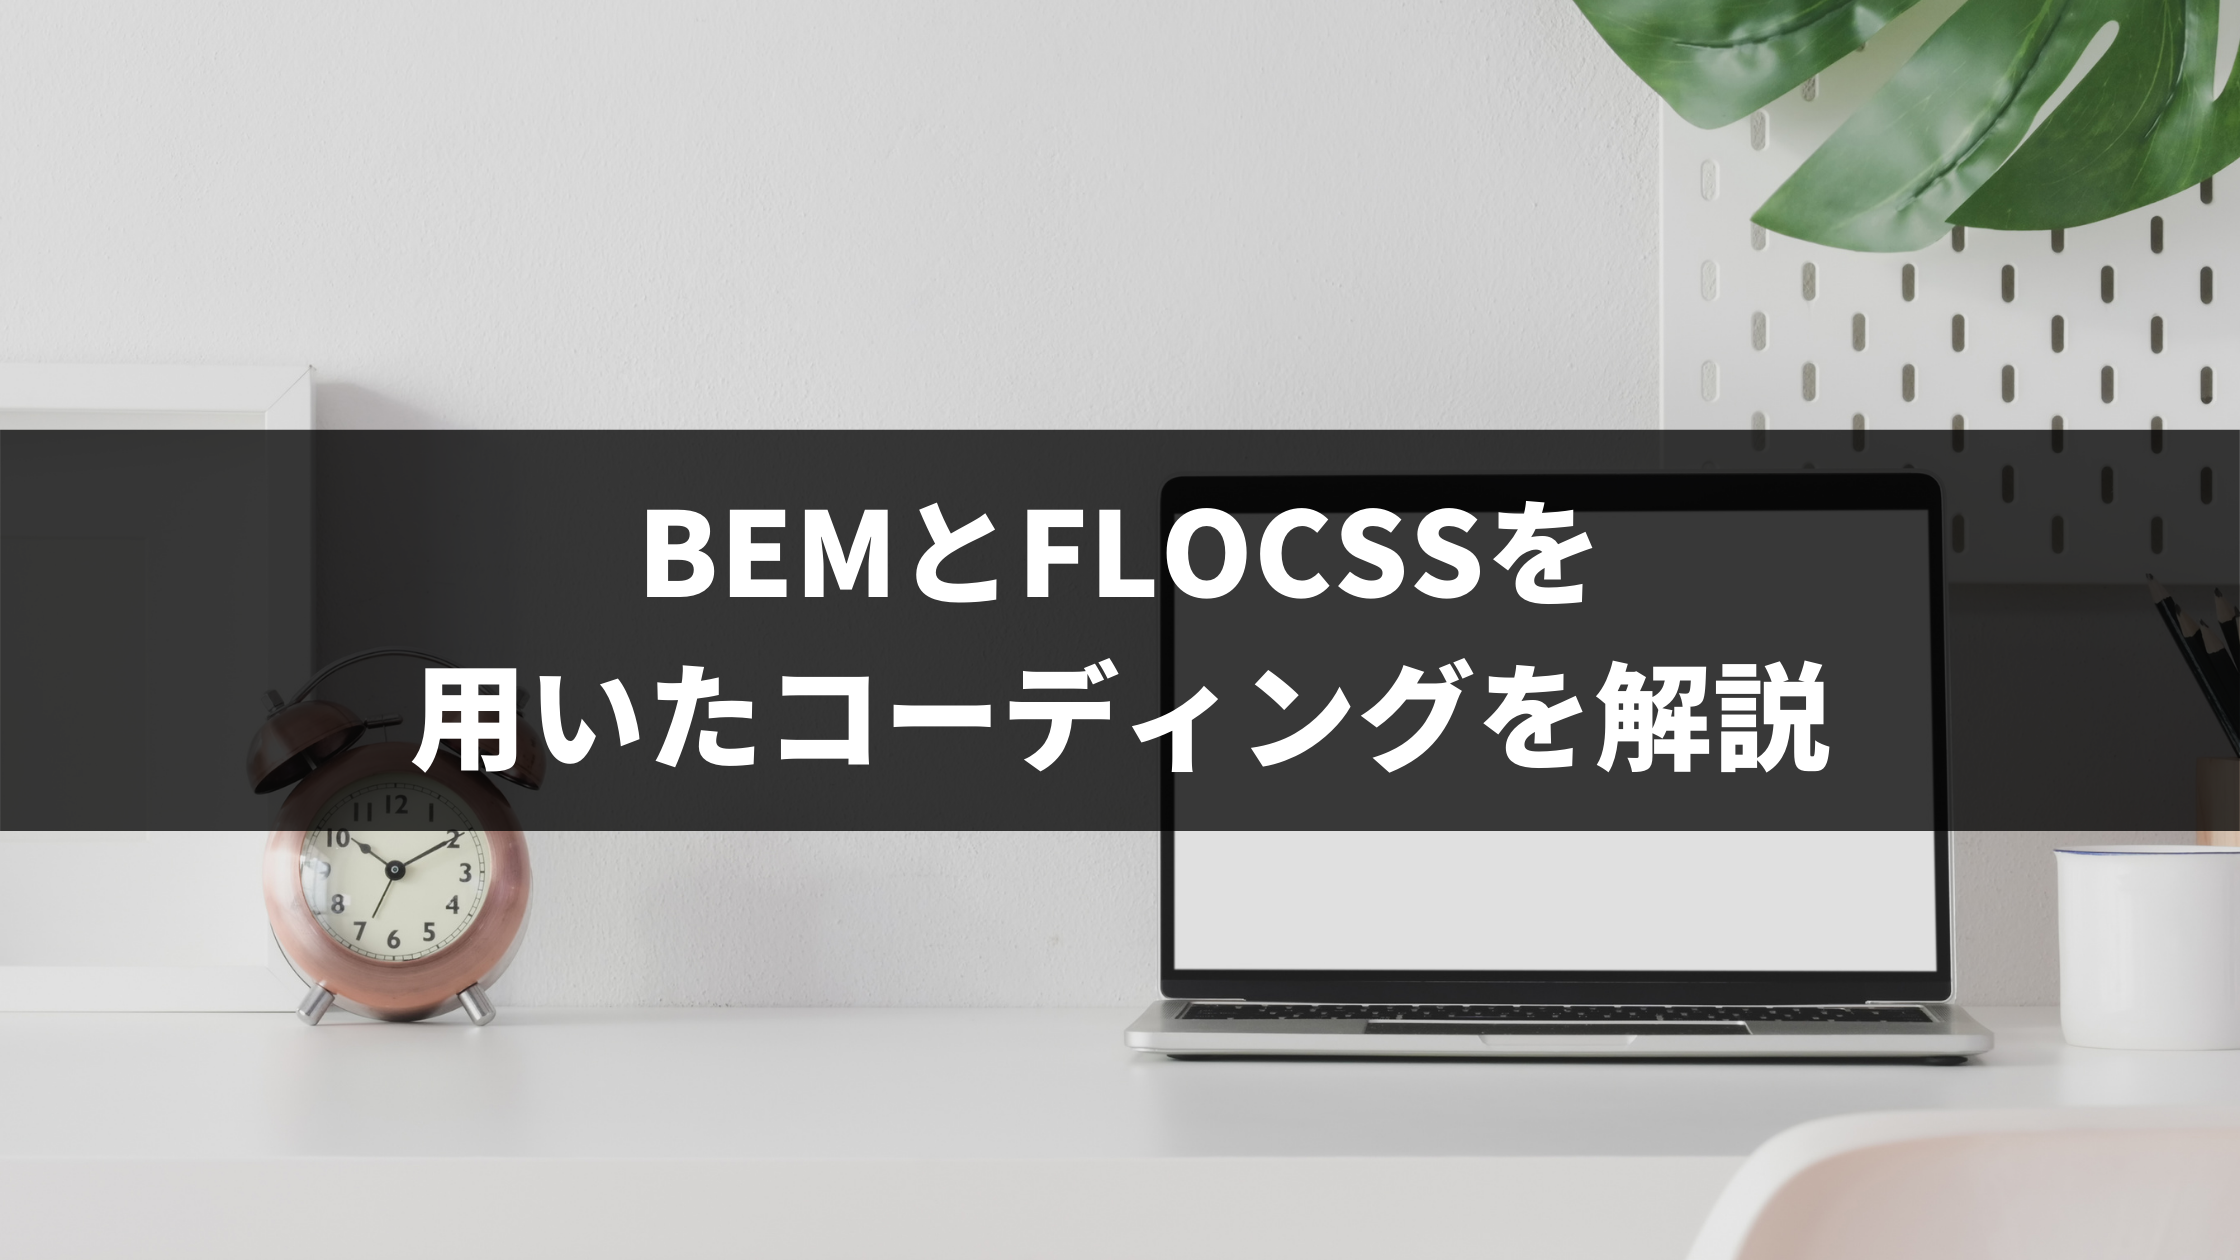 BEMとFLOCSSを用いたコーディングの設計手法について解説